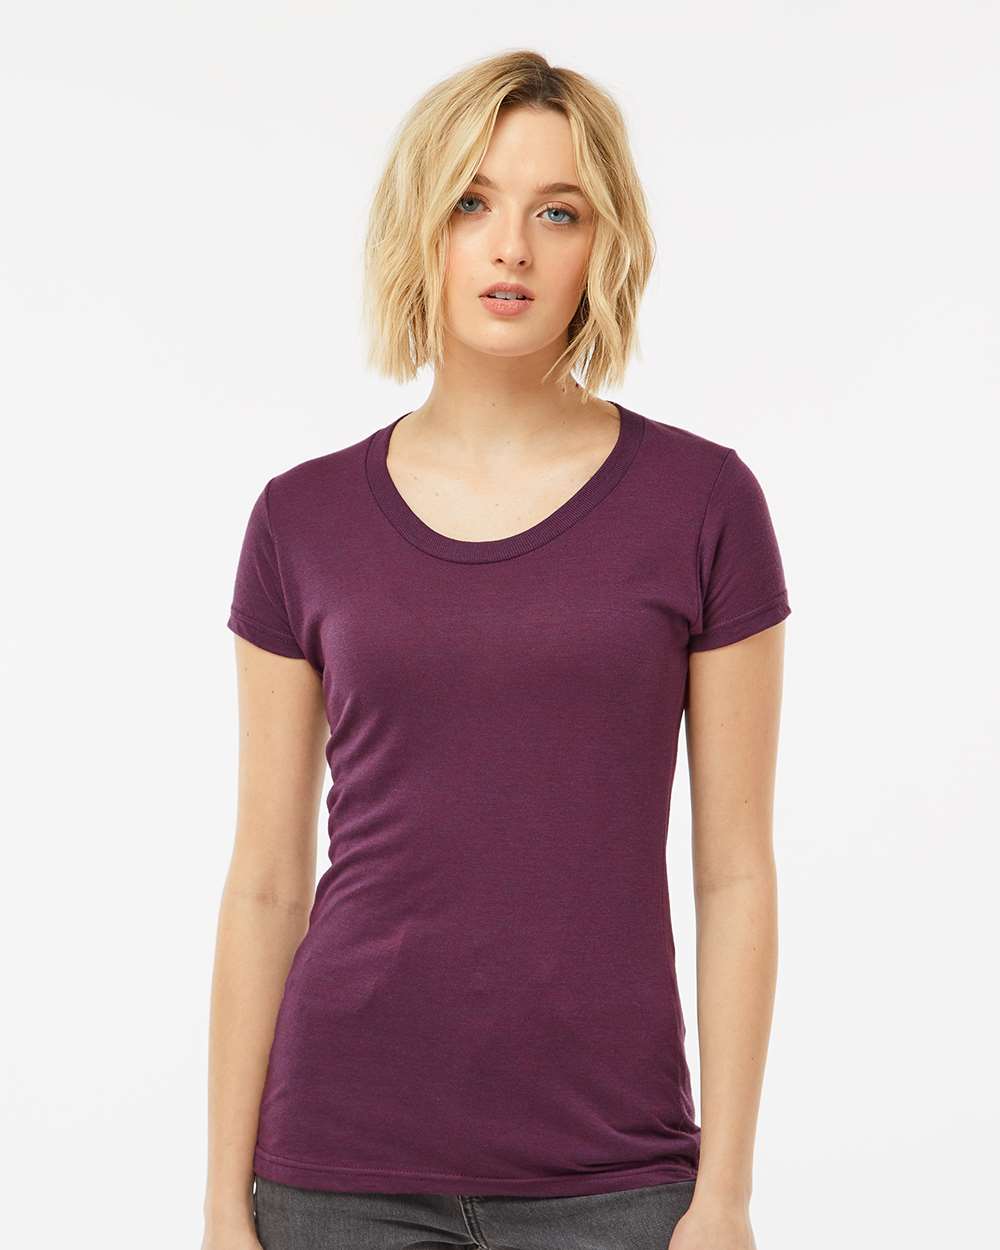 Pretreated Tultex 253 Women's Slim Fit Tri-Blend T-Shirt